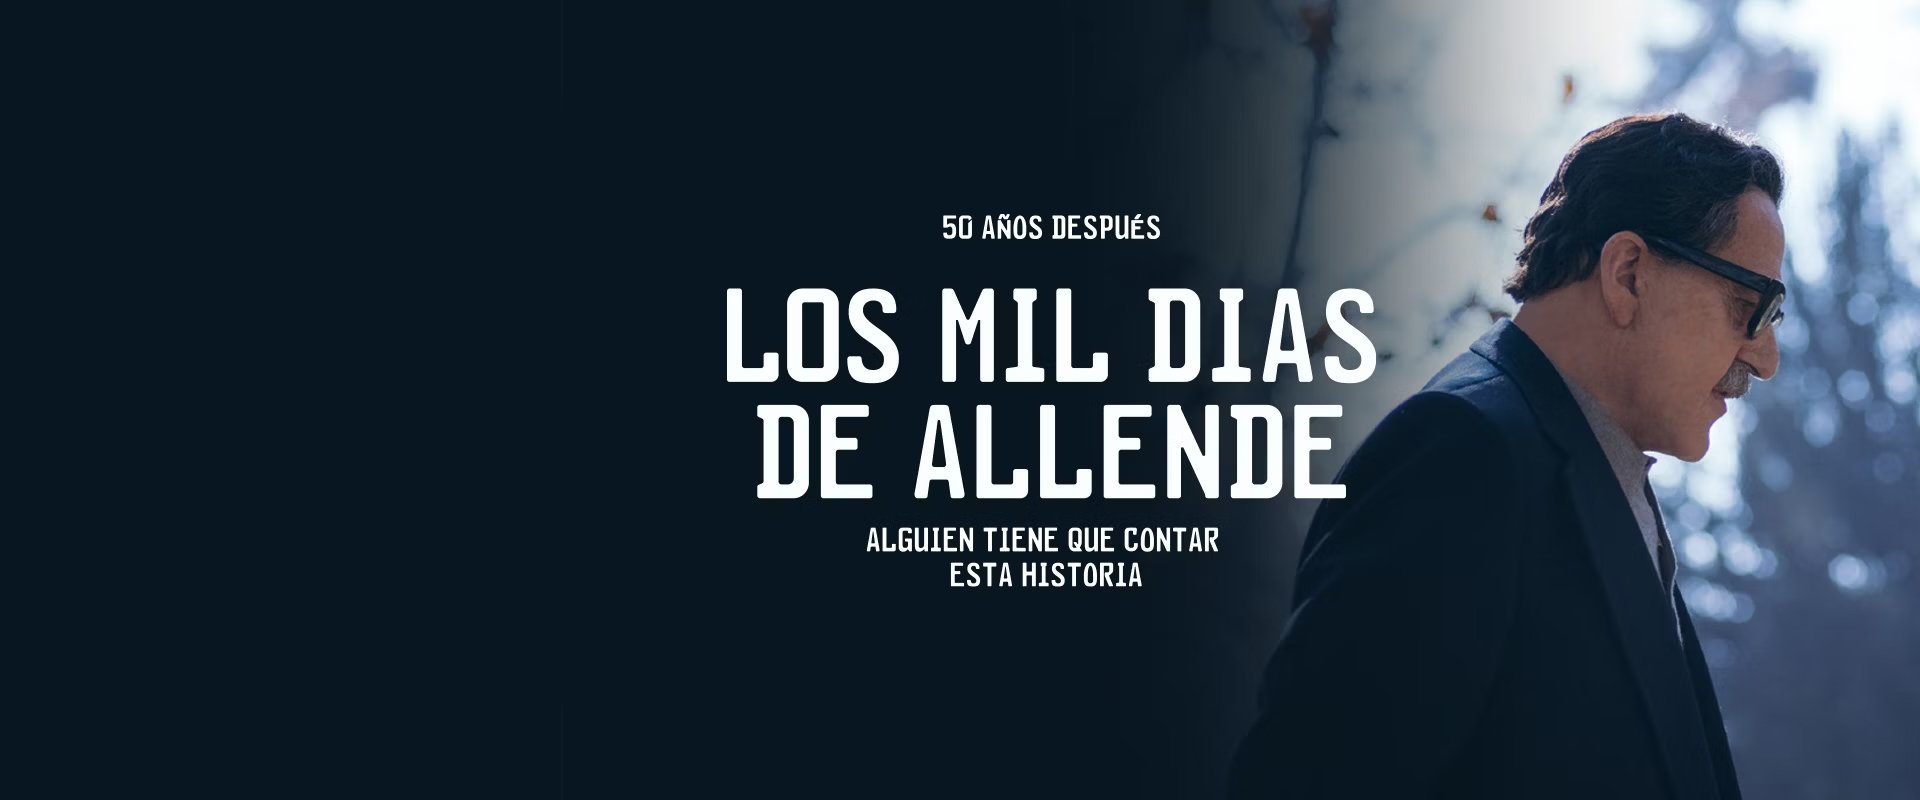   1000 Days of Allende   SERIES | 4 x 1 HR   VIEW  